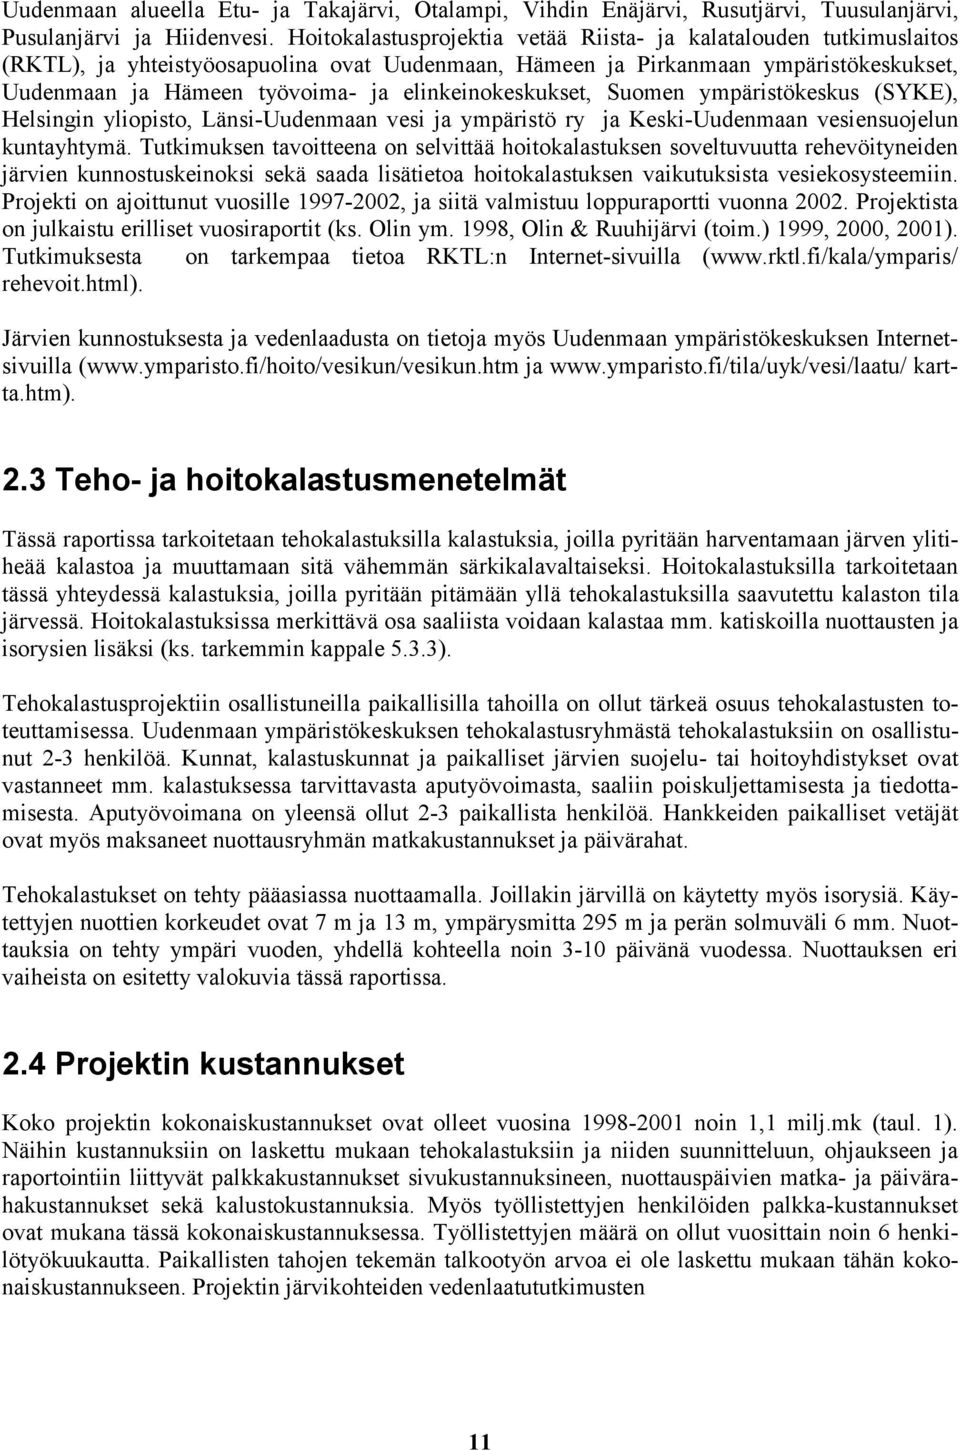 elinkeinokeskukset, Suomen ympäristökeskus (SYKE), Helsingin yliopisto, Länsi-Uudenmaan vesi ja ympäristö ry ja Keski-Uudenmaan vesiensuojelun kuntayhtymä.